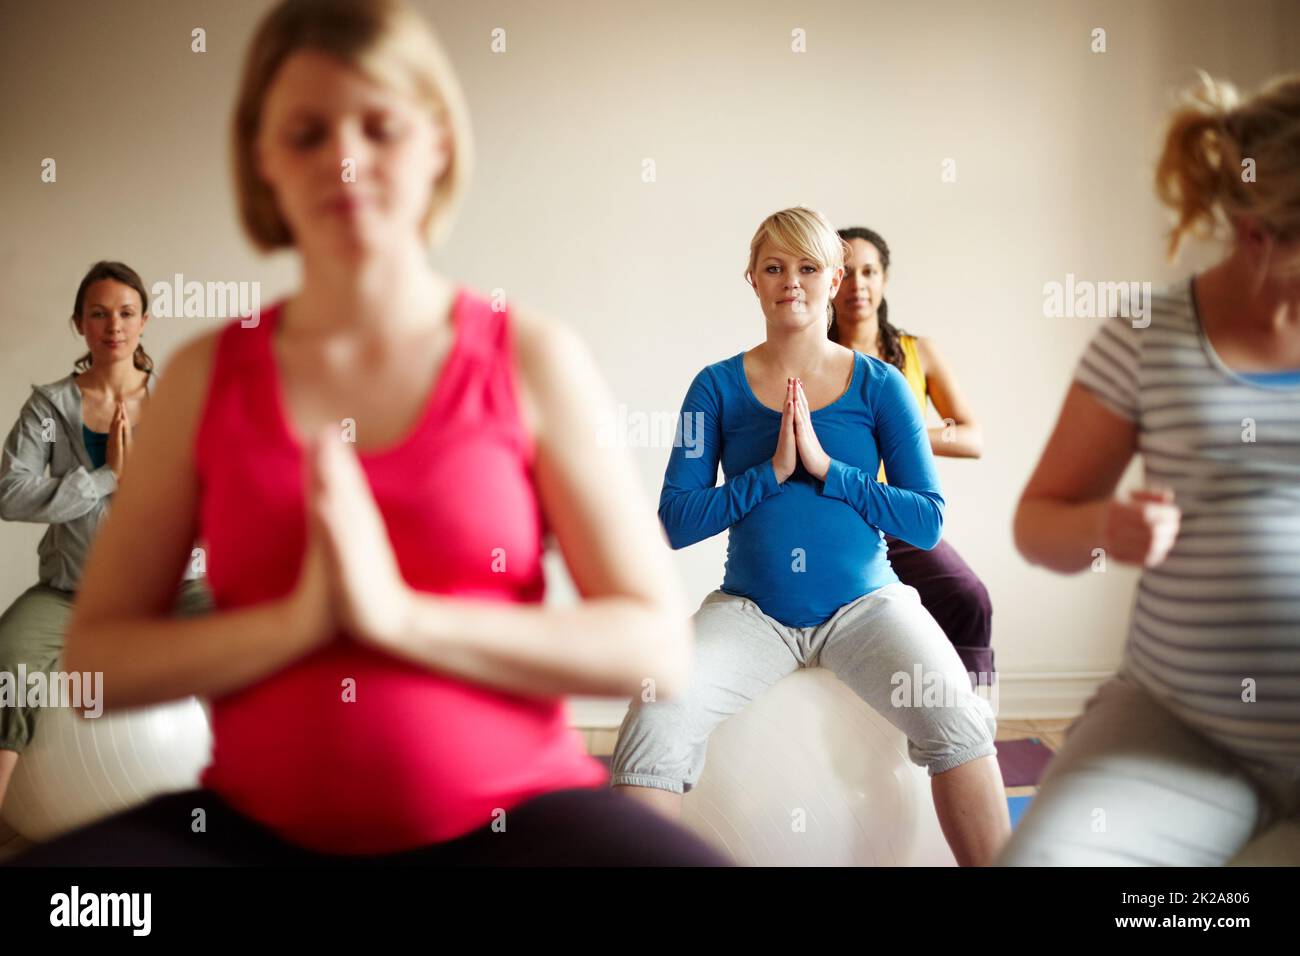 Glückselige Mutterschaft. Eine multiethnische Gruppe von Schwangeren, die in einem Yogakurs auf Übungsbällen meditieren. Stockfoto